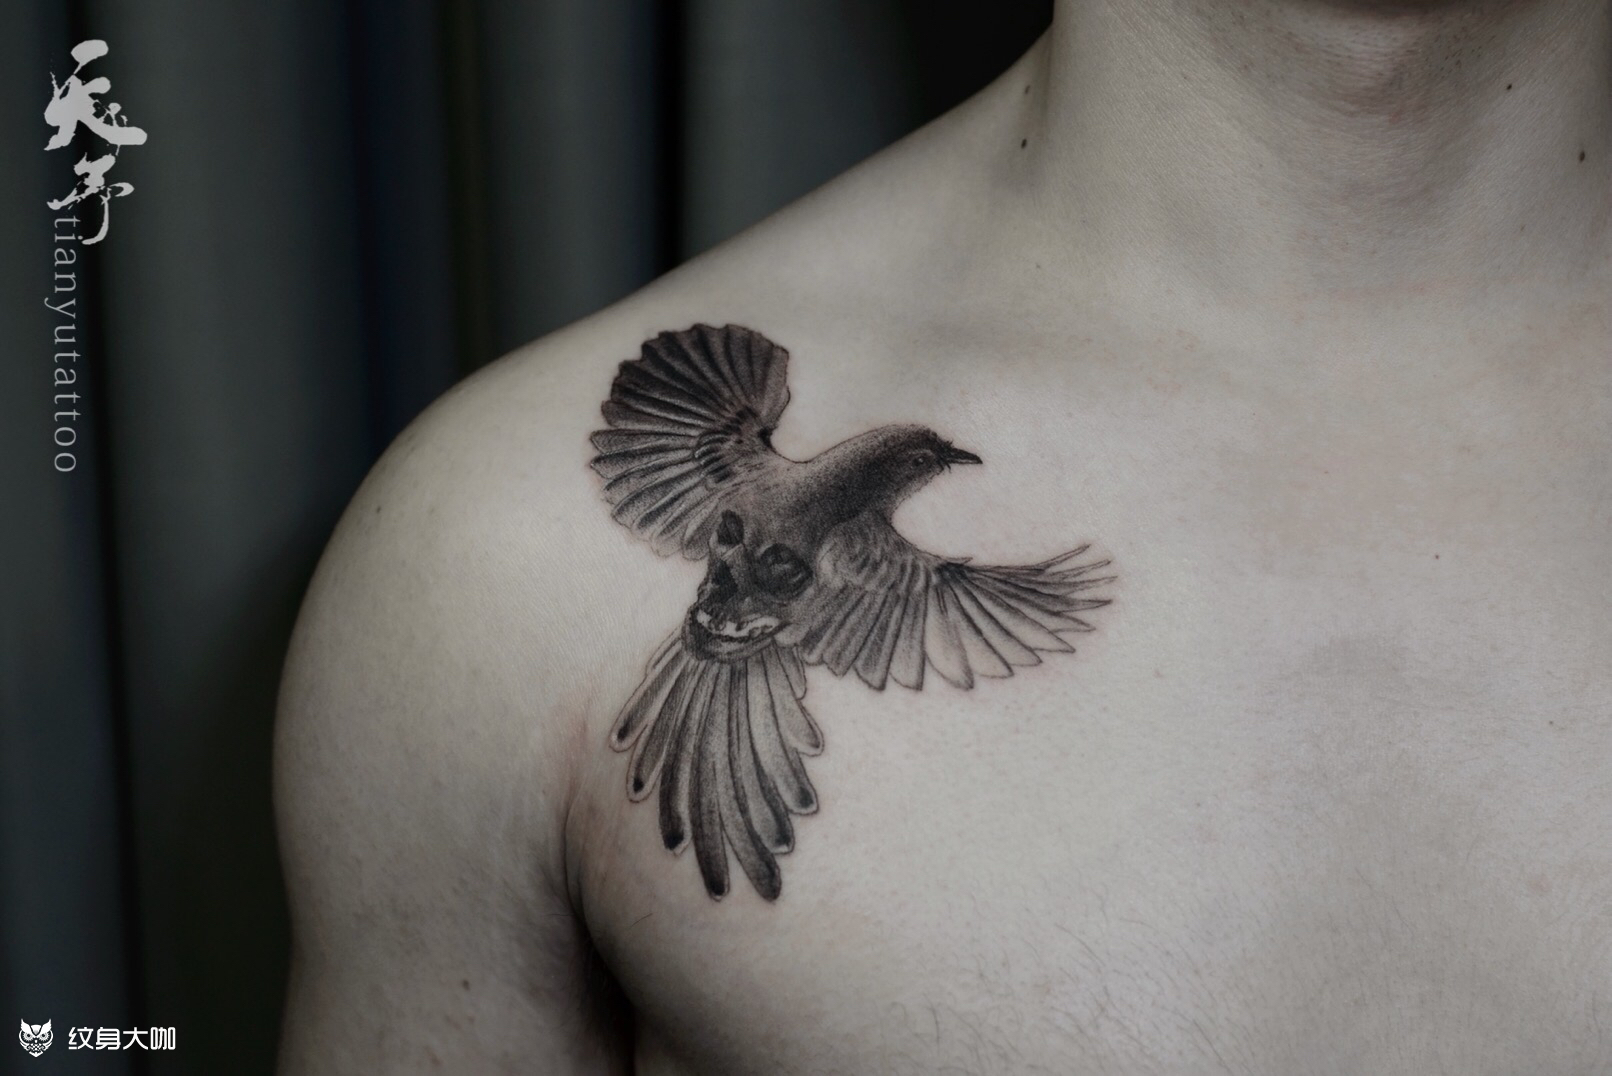 手臂鸟纹身图案作品 - 花臂半胛作品 武汉老兵纹身